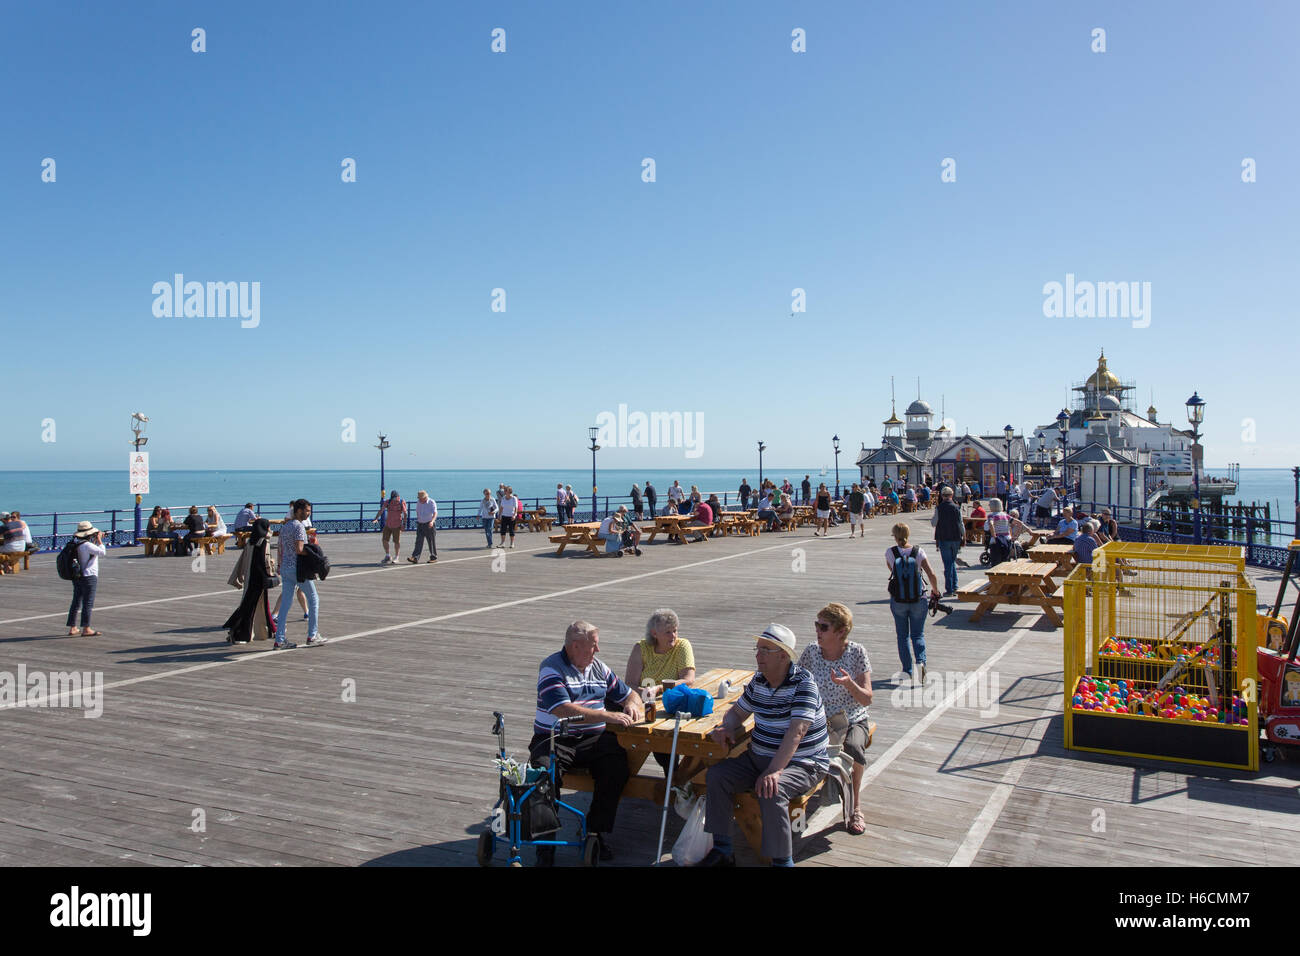 The Pier, Grand Parade, Eastbourne Stock Photo